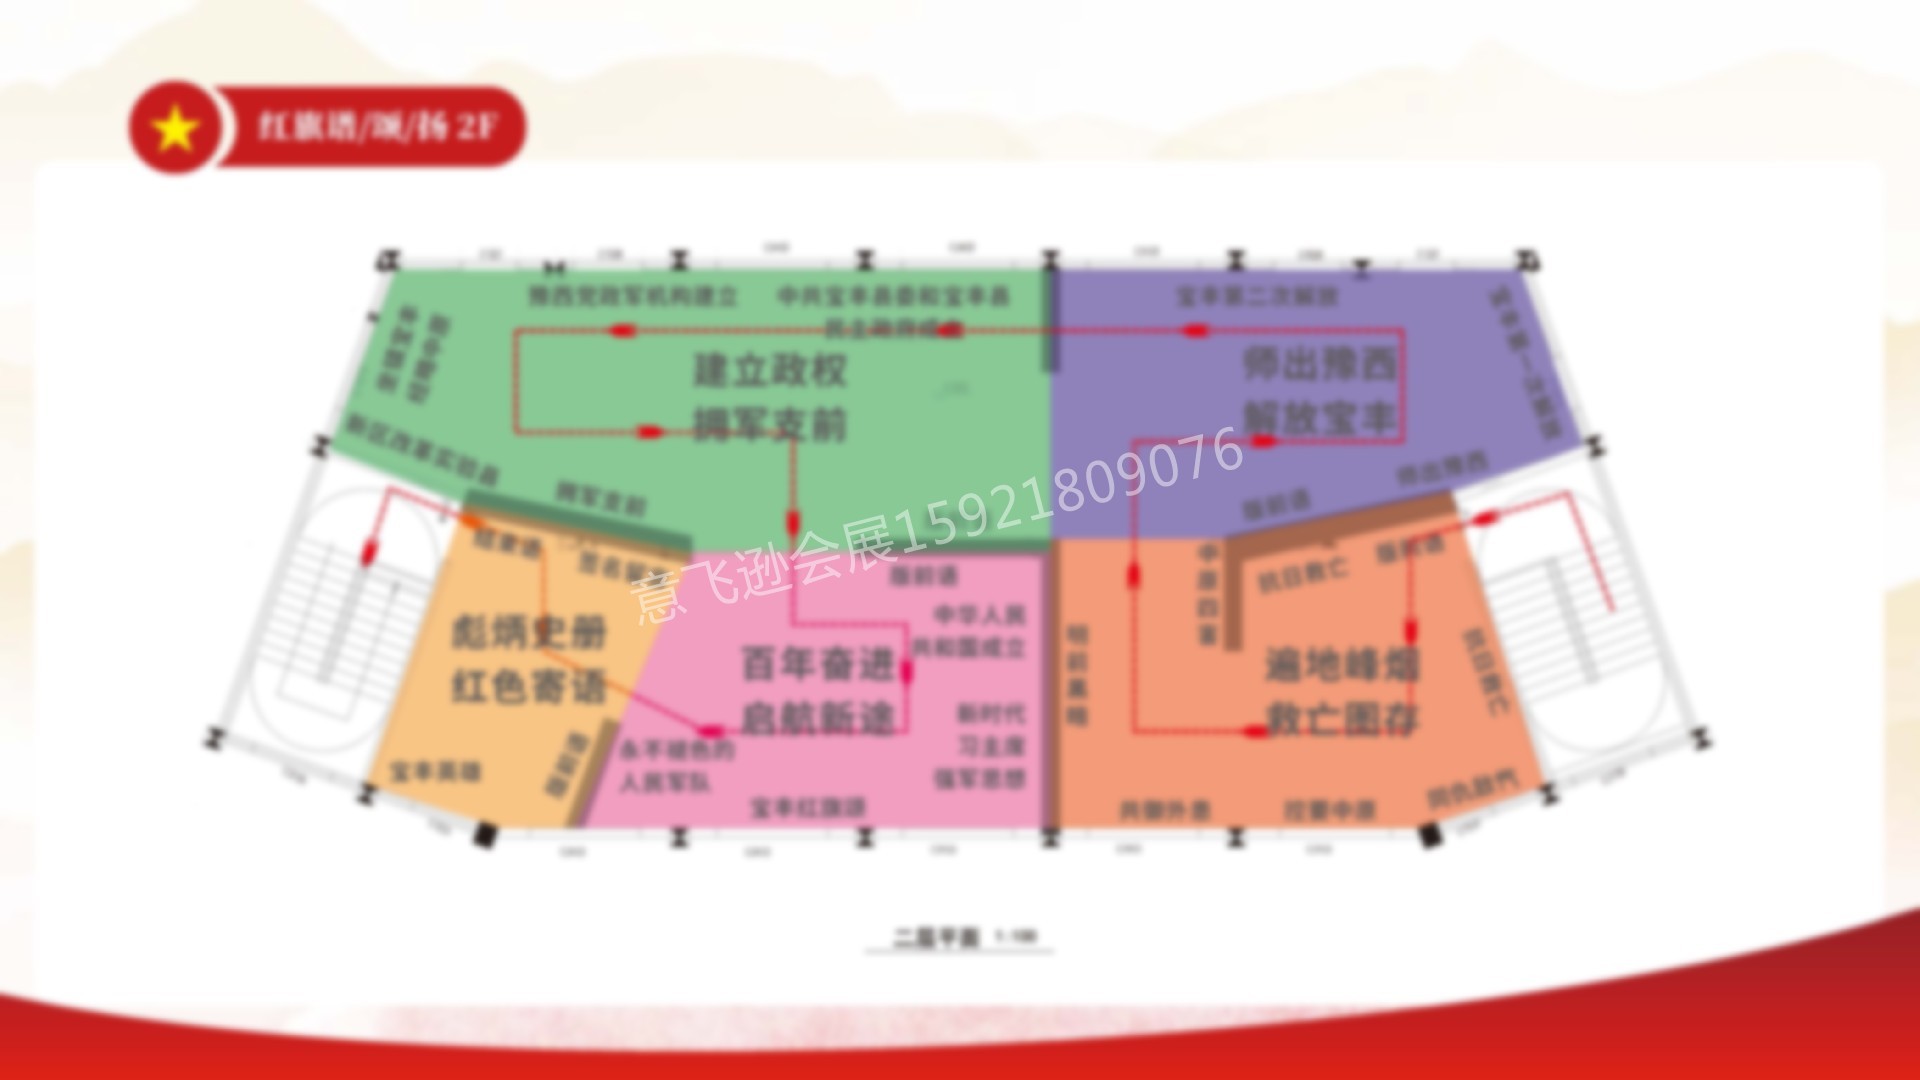 上海意飞逊-宝丰红色记忆展览馆-20210331(1)_页面_15 拷贝.jpg